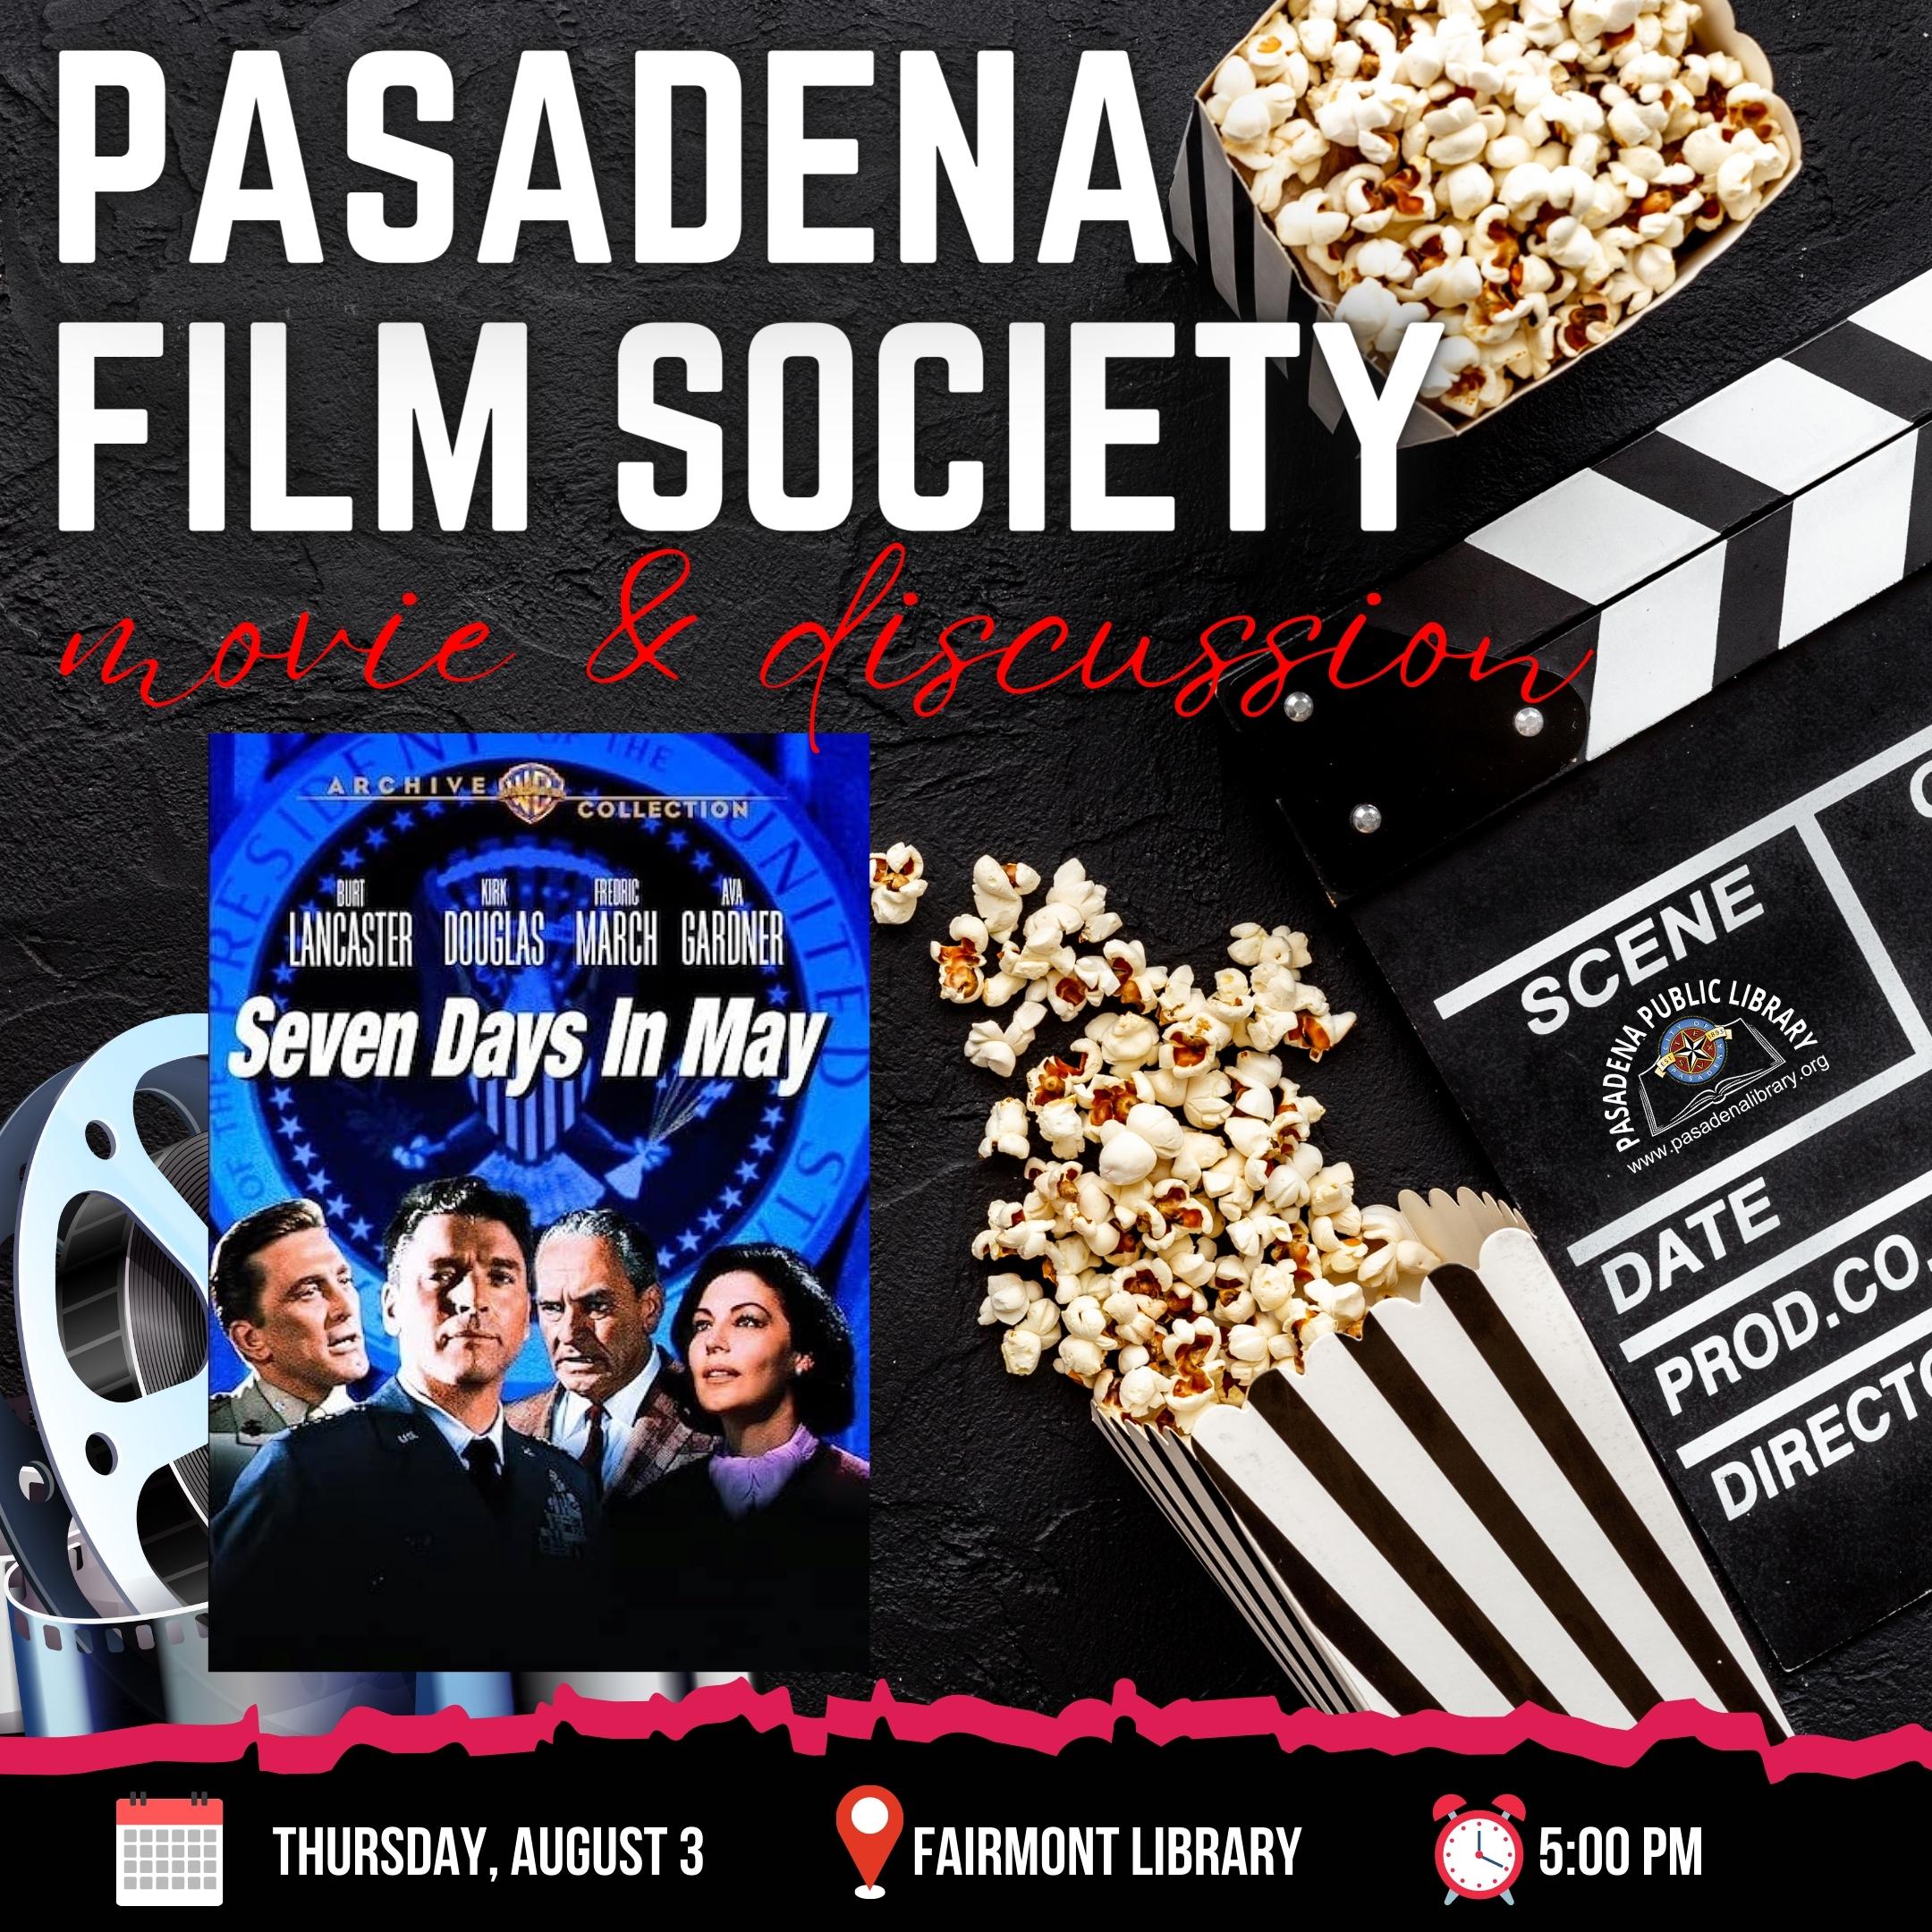 Pasadena Fil Society showing Seven Days in May